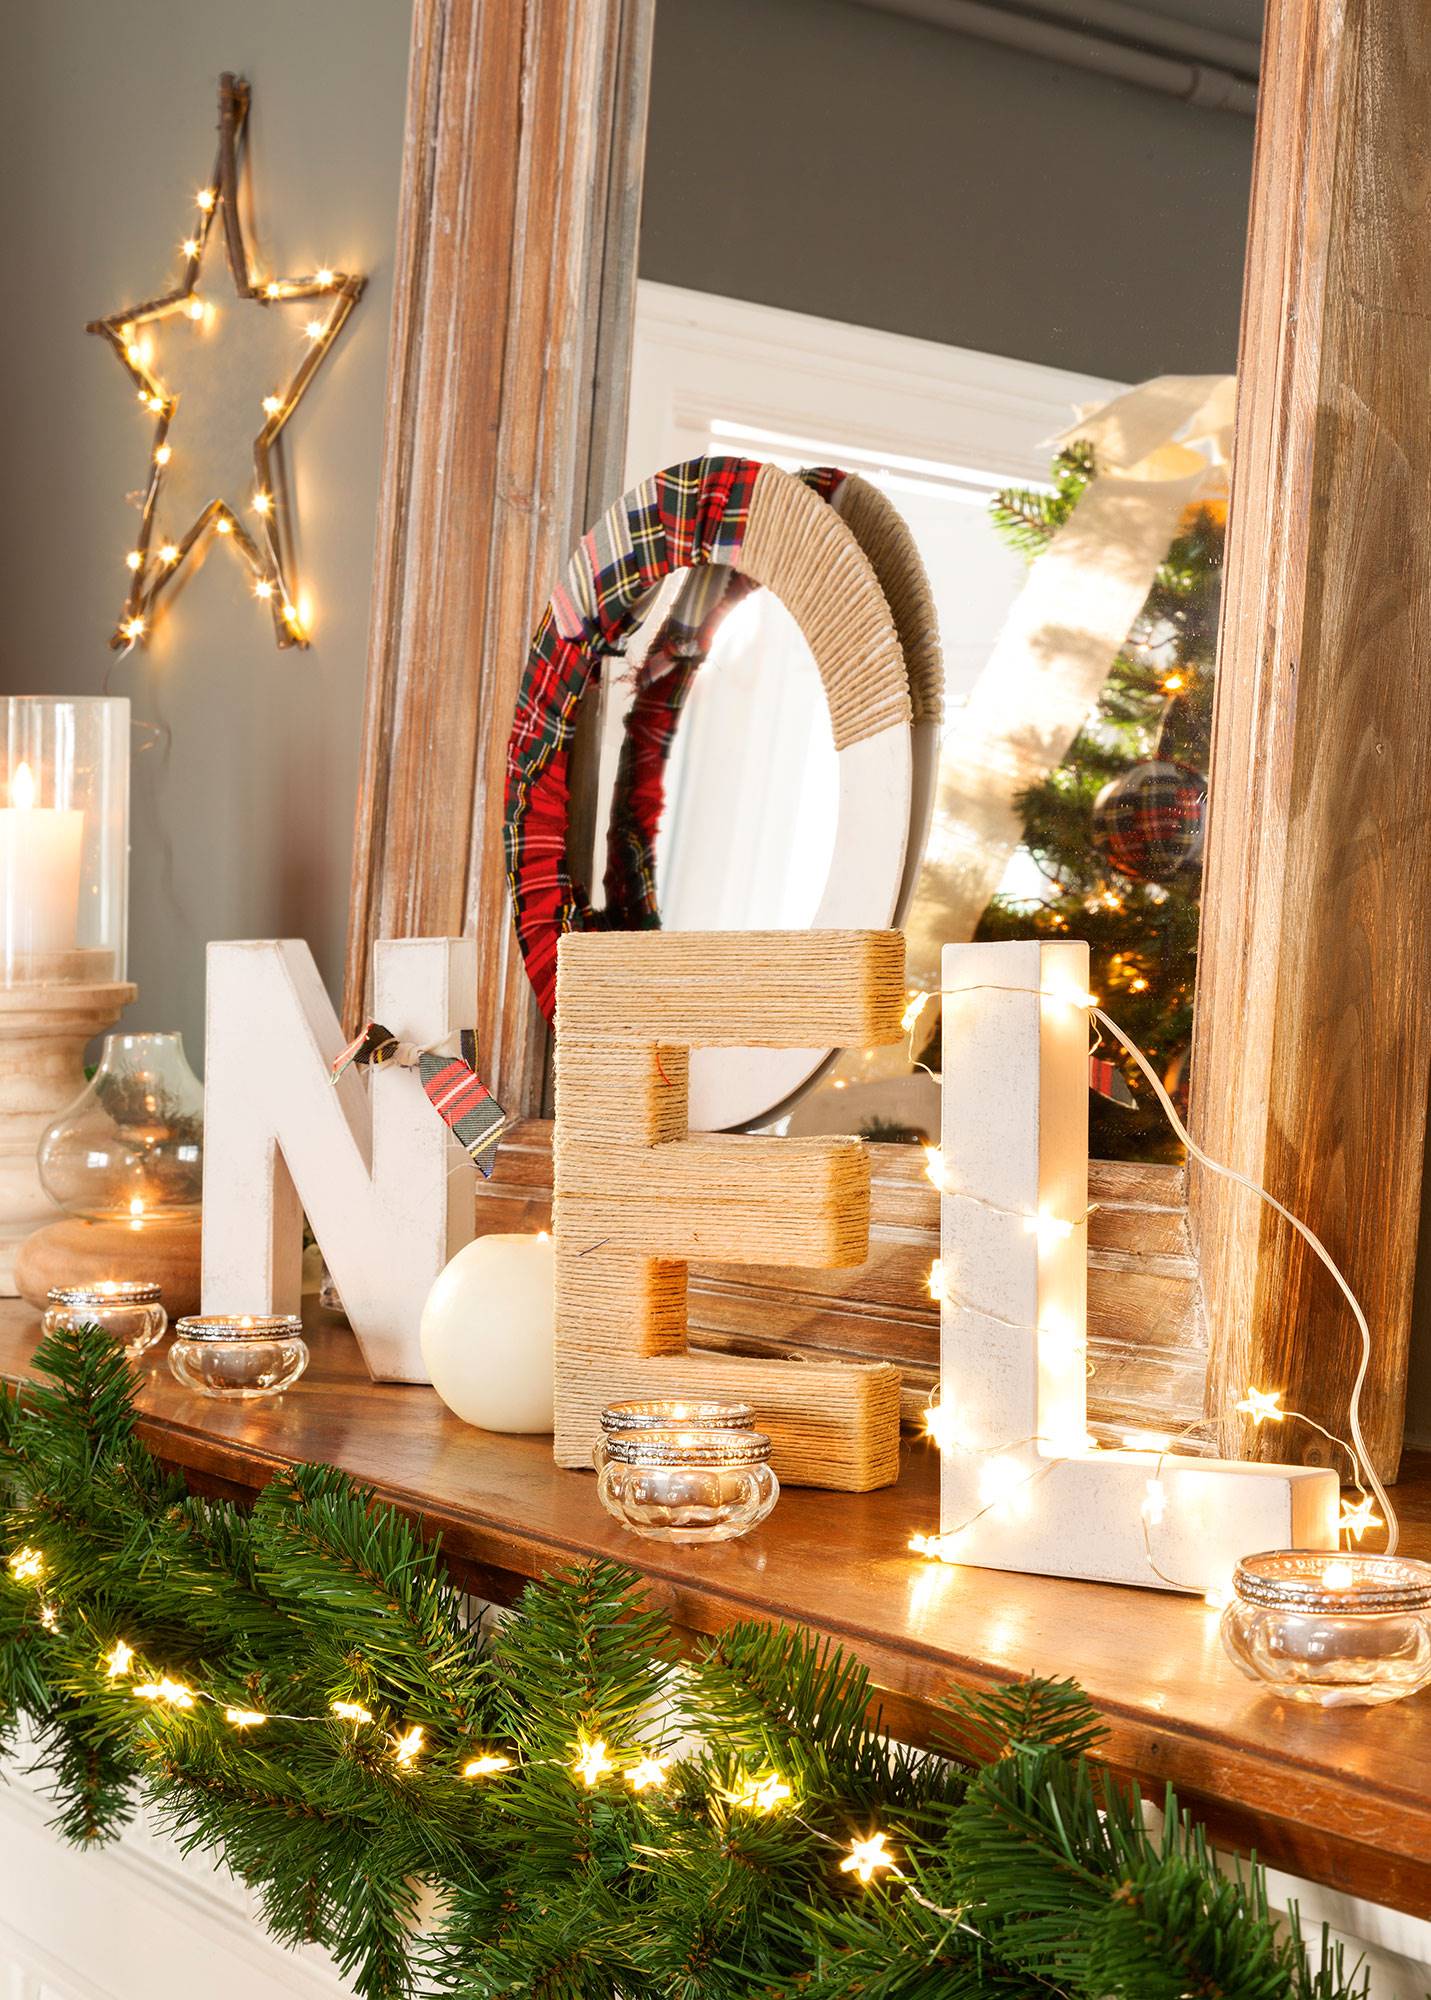 Detalle de repisa de chimenea decorada con la palabra Noel, guirnalda luminosa y velas.